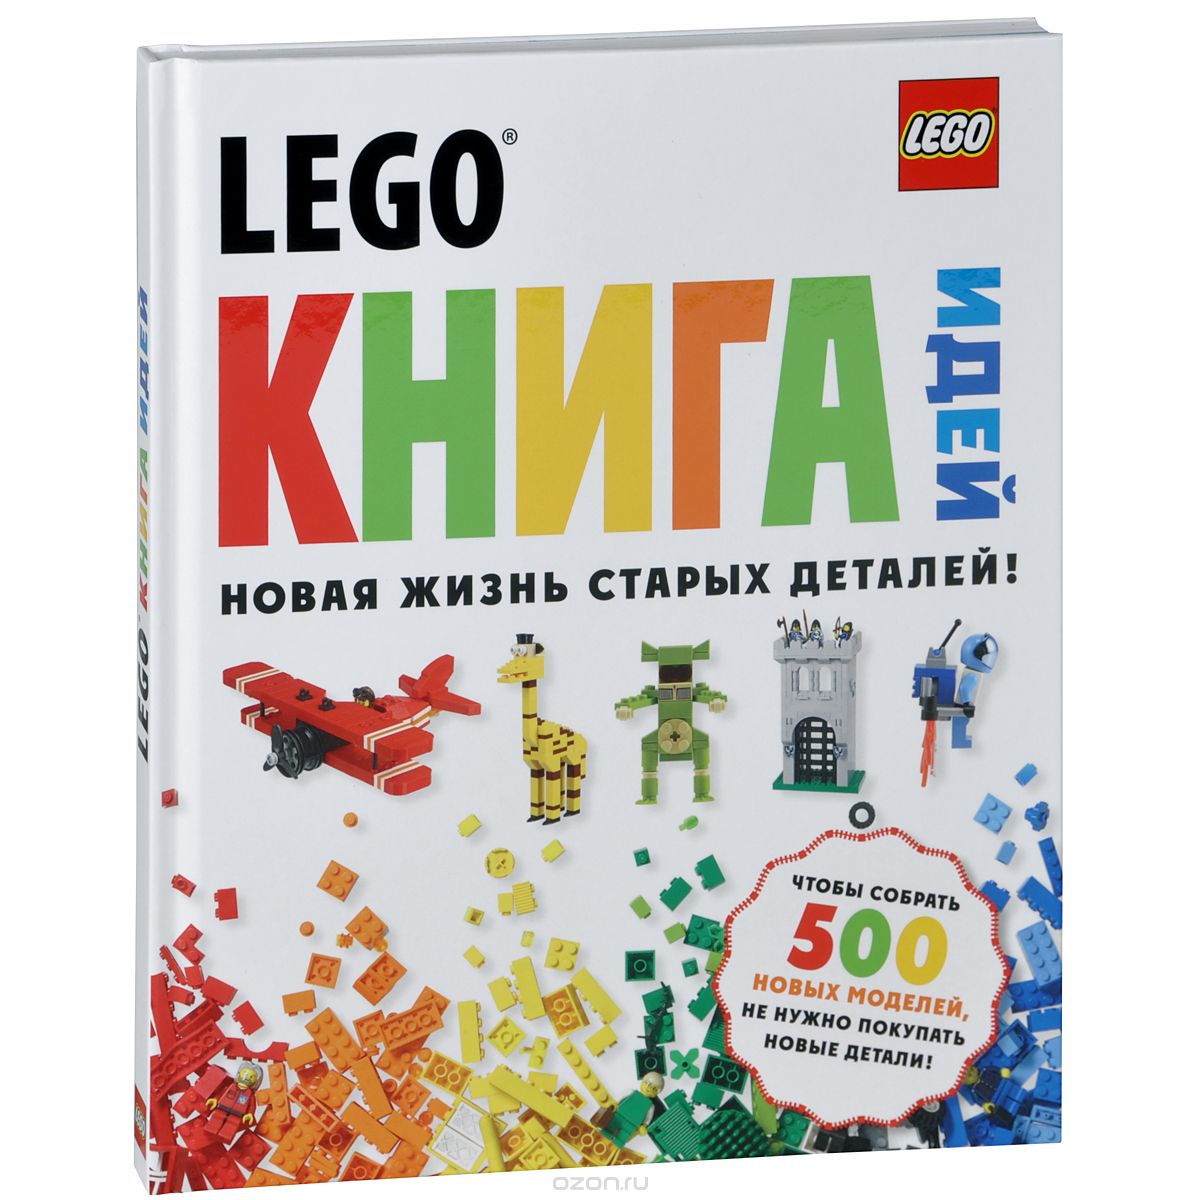 Скачать книгу "LEGO. Книга идей"